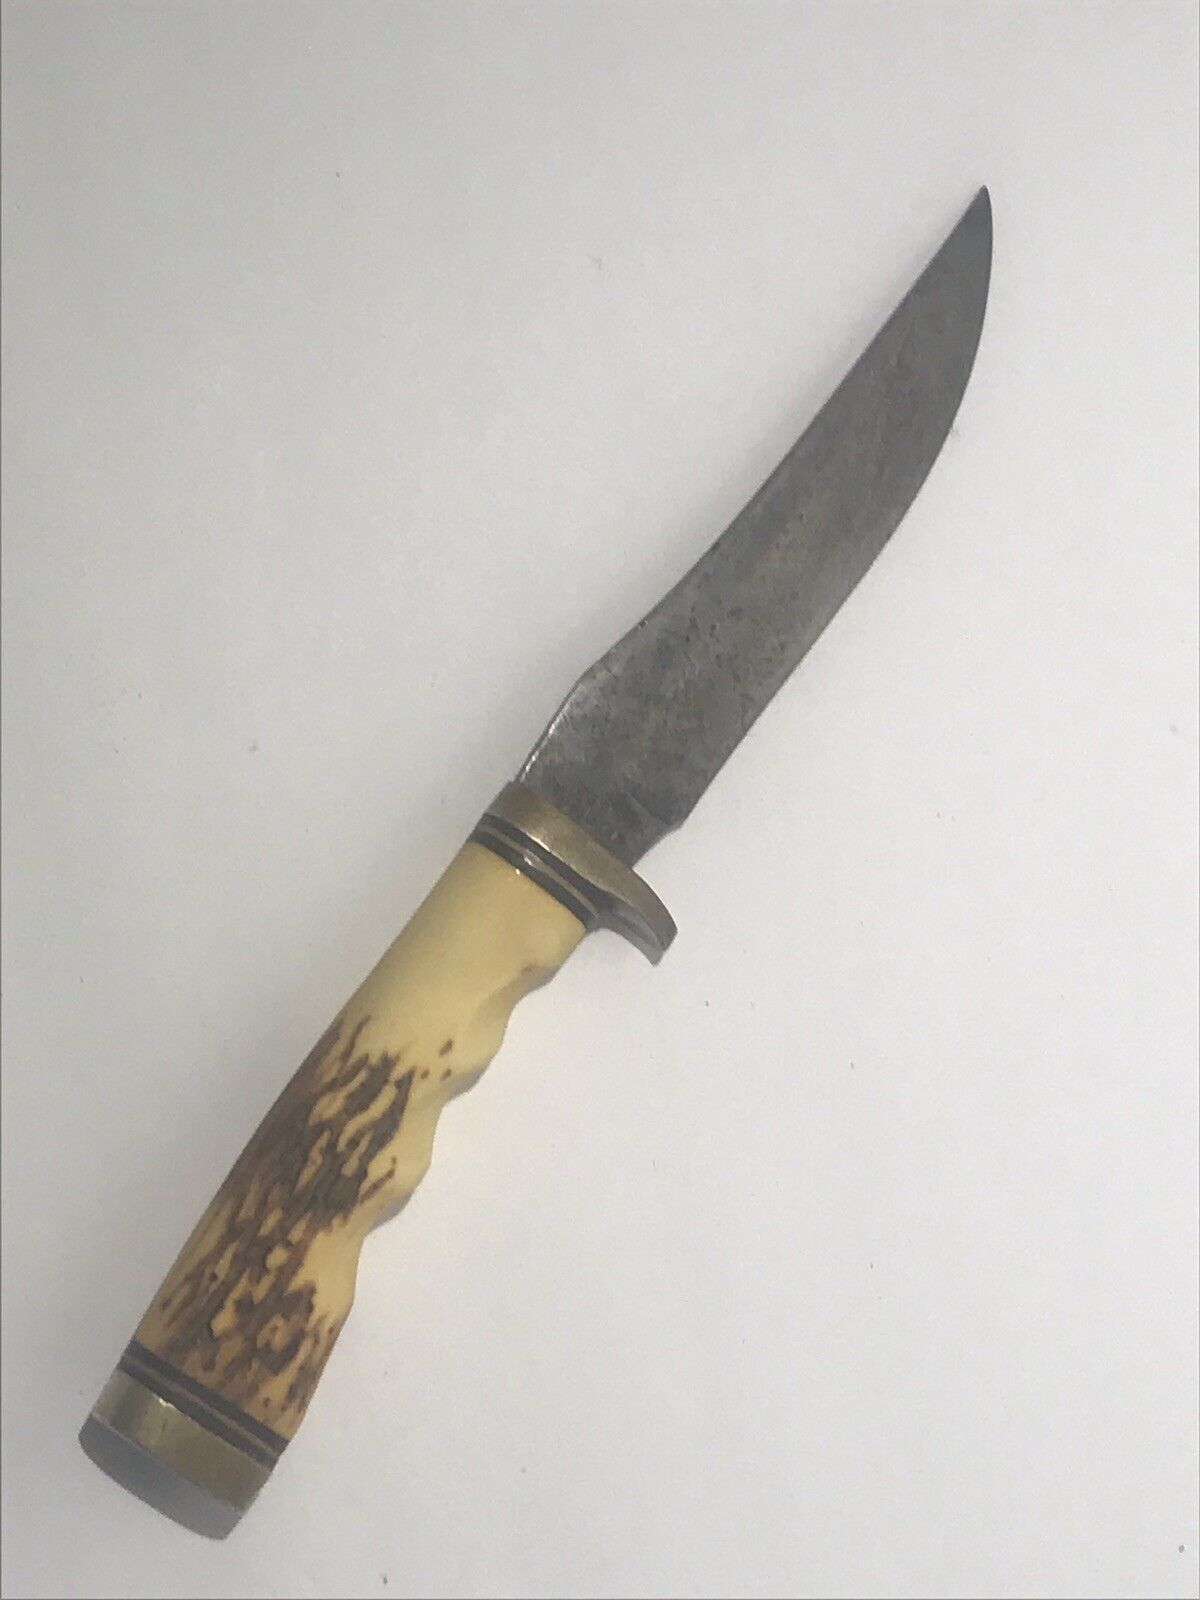 Vintage Craftsman Fixed Blade Hunting Knife / Schrade 49er? USA Made High Carbon